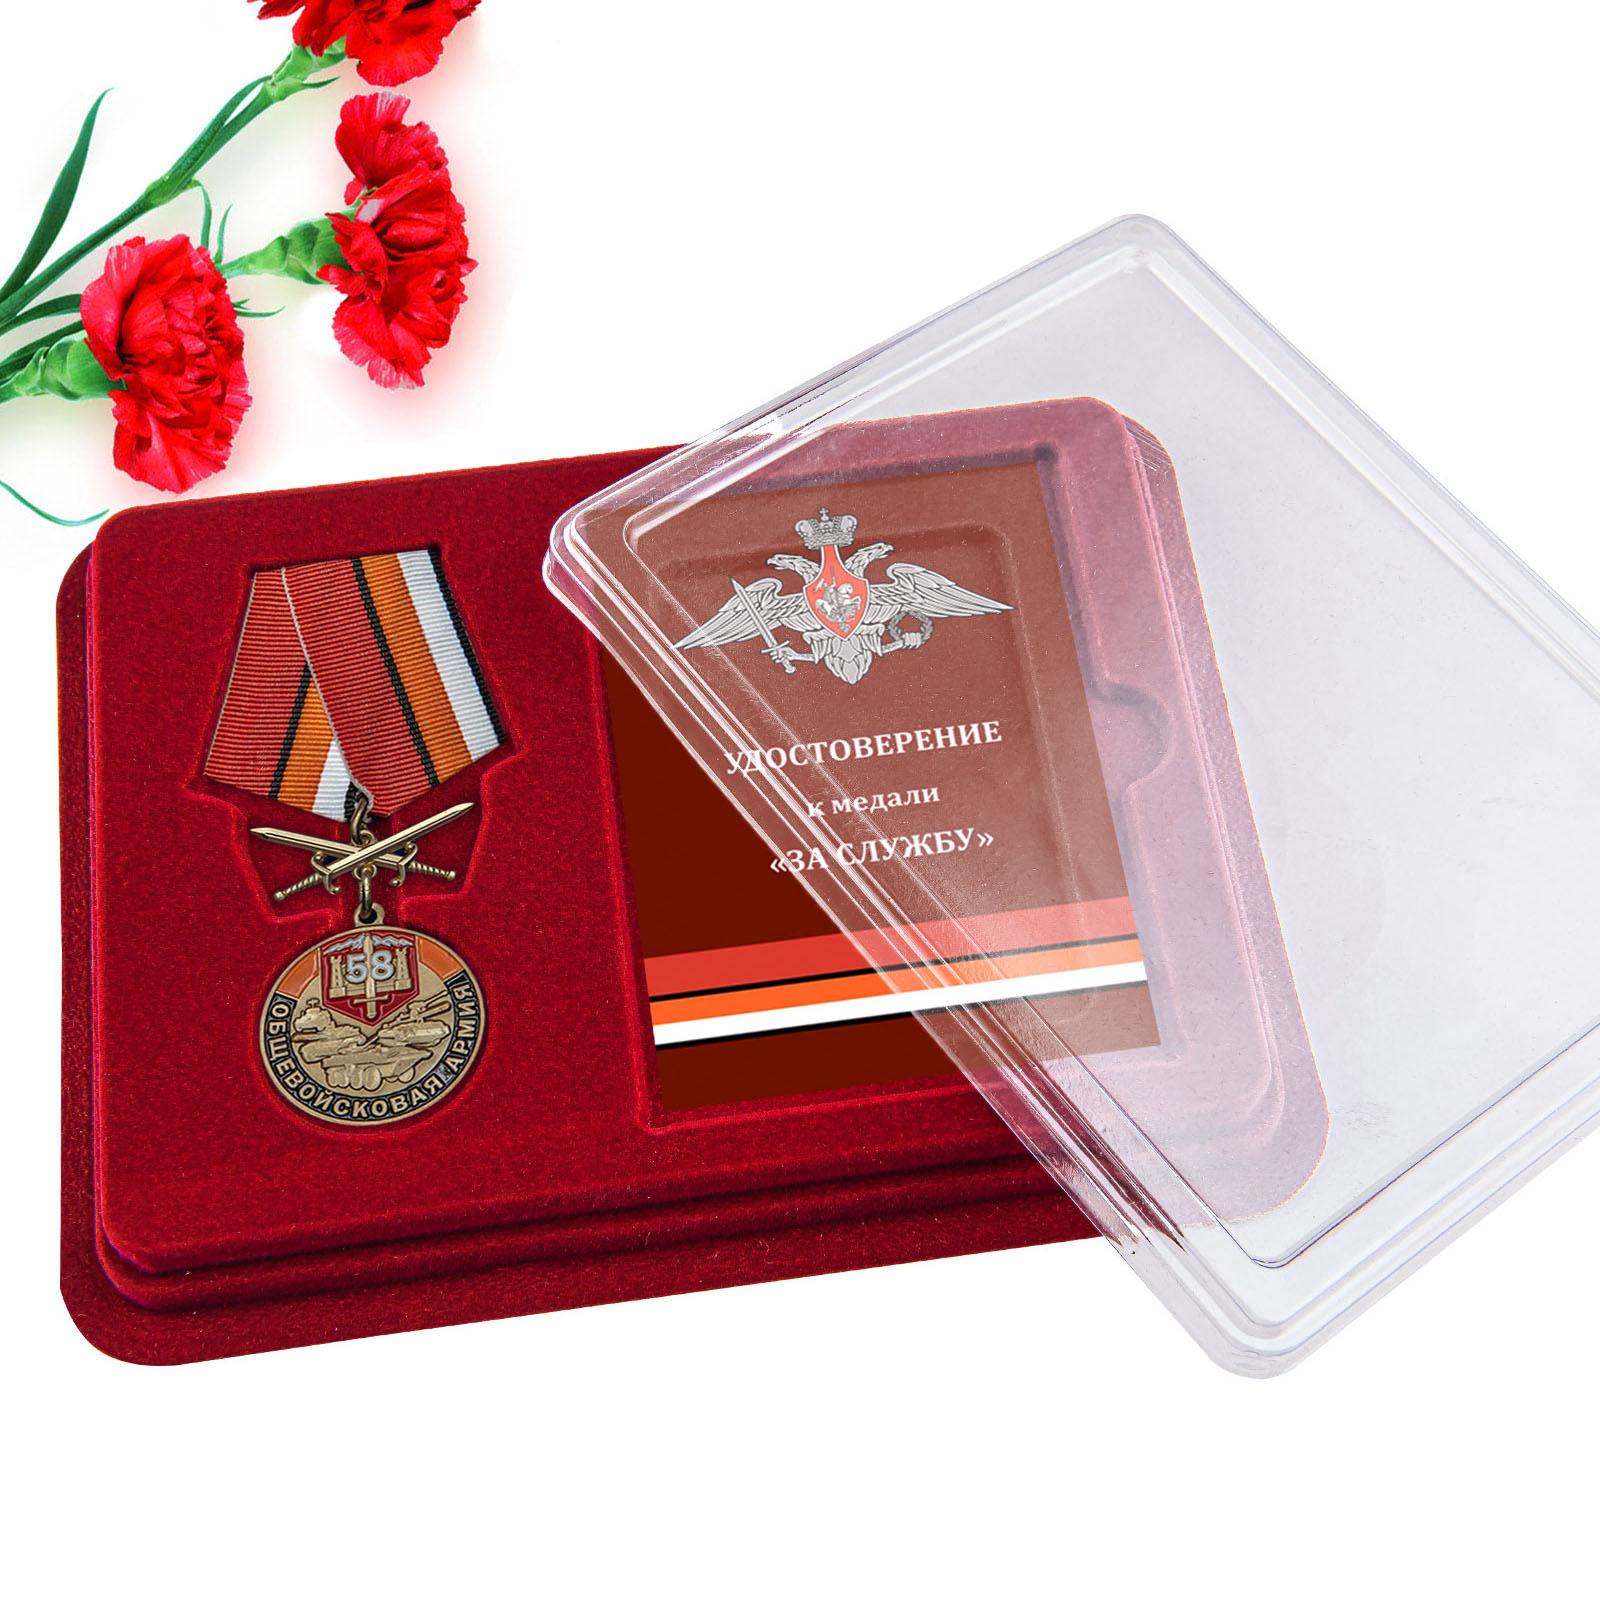 Купить медаль 58 Общевойсковая армия За службу с доставкой в ваш город